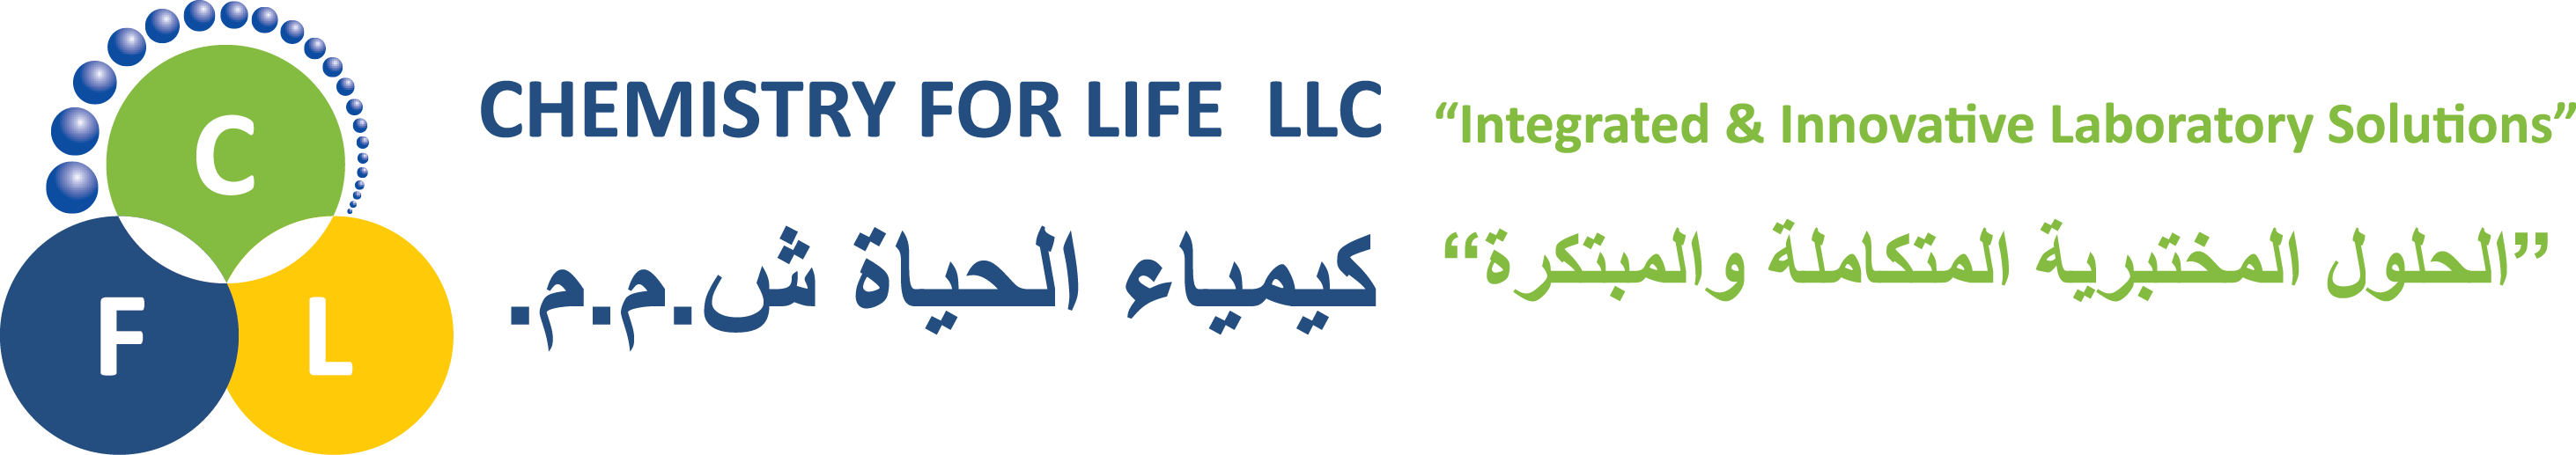 Chemistry for Life Logo